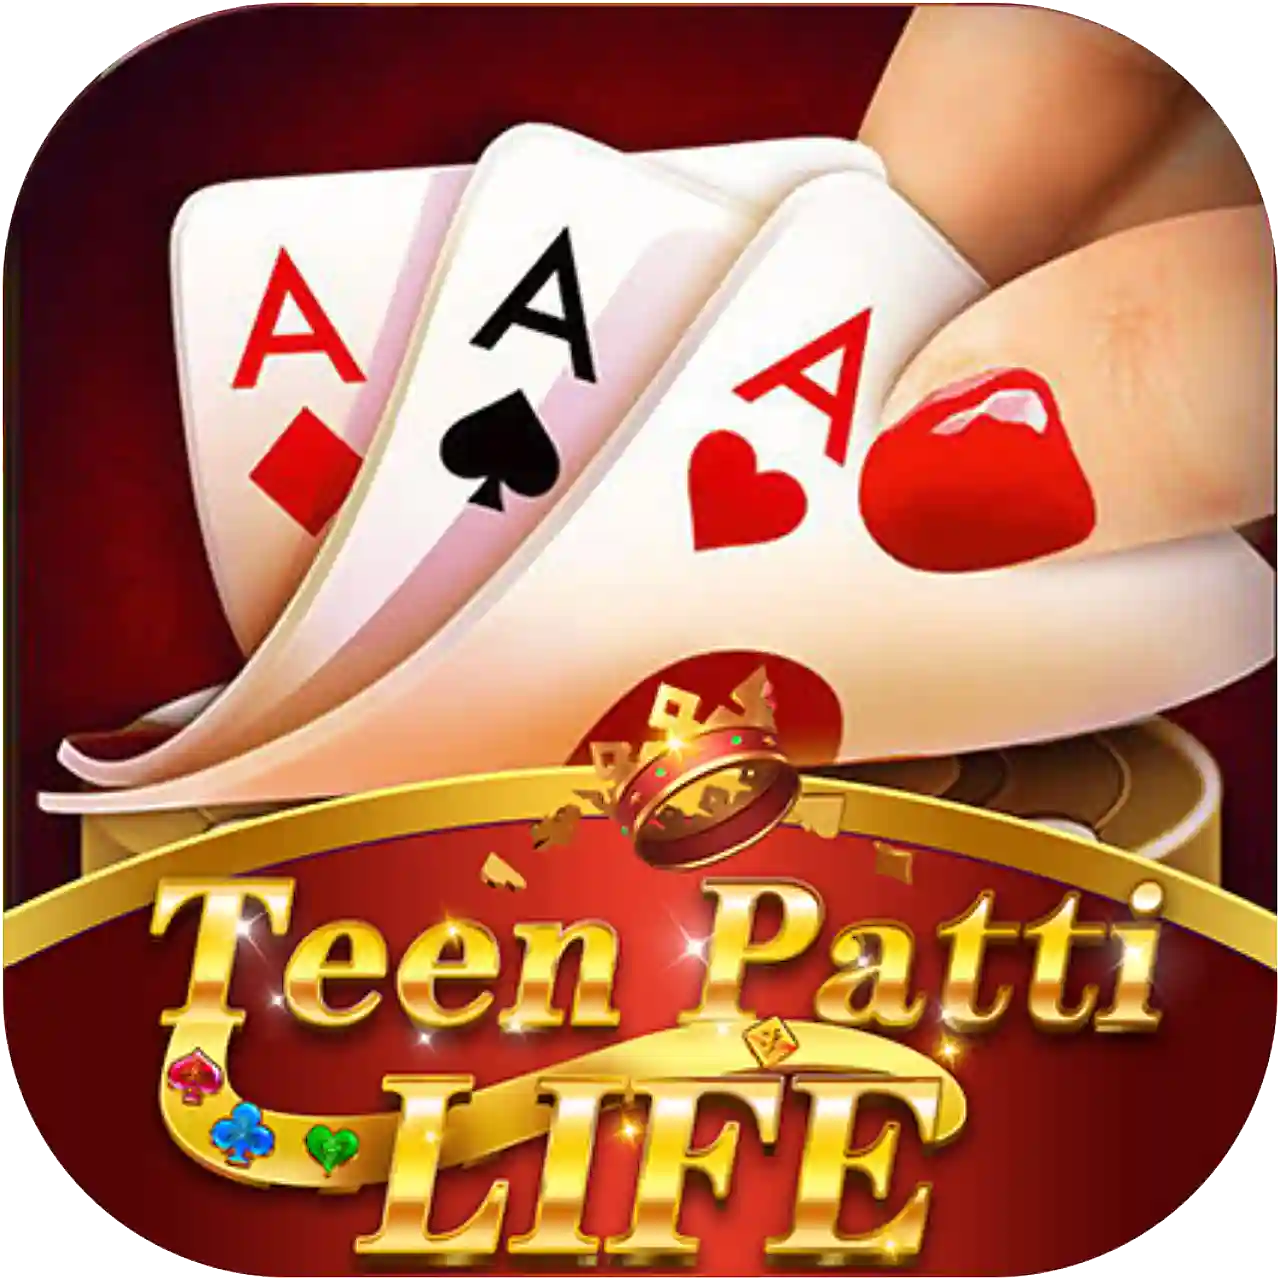 Teen Patti Life - New Rummy App List